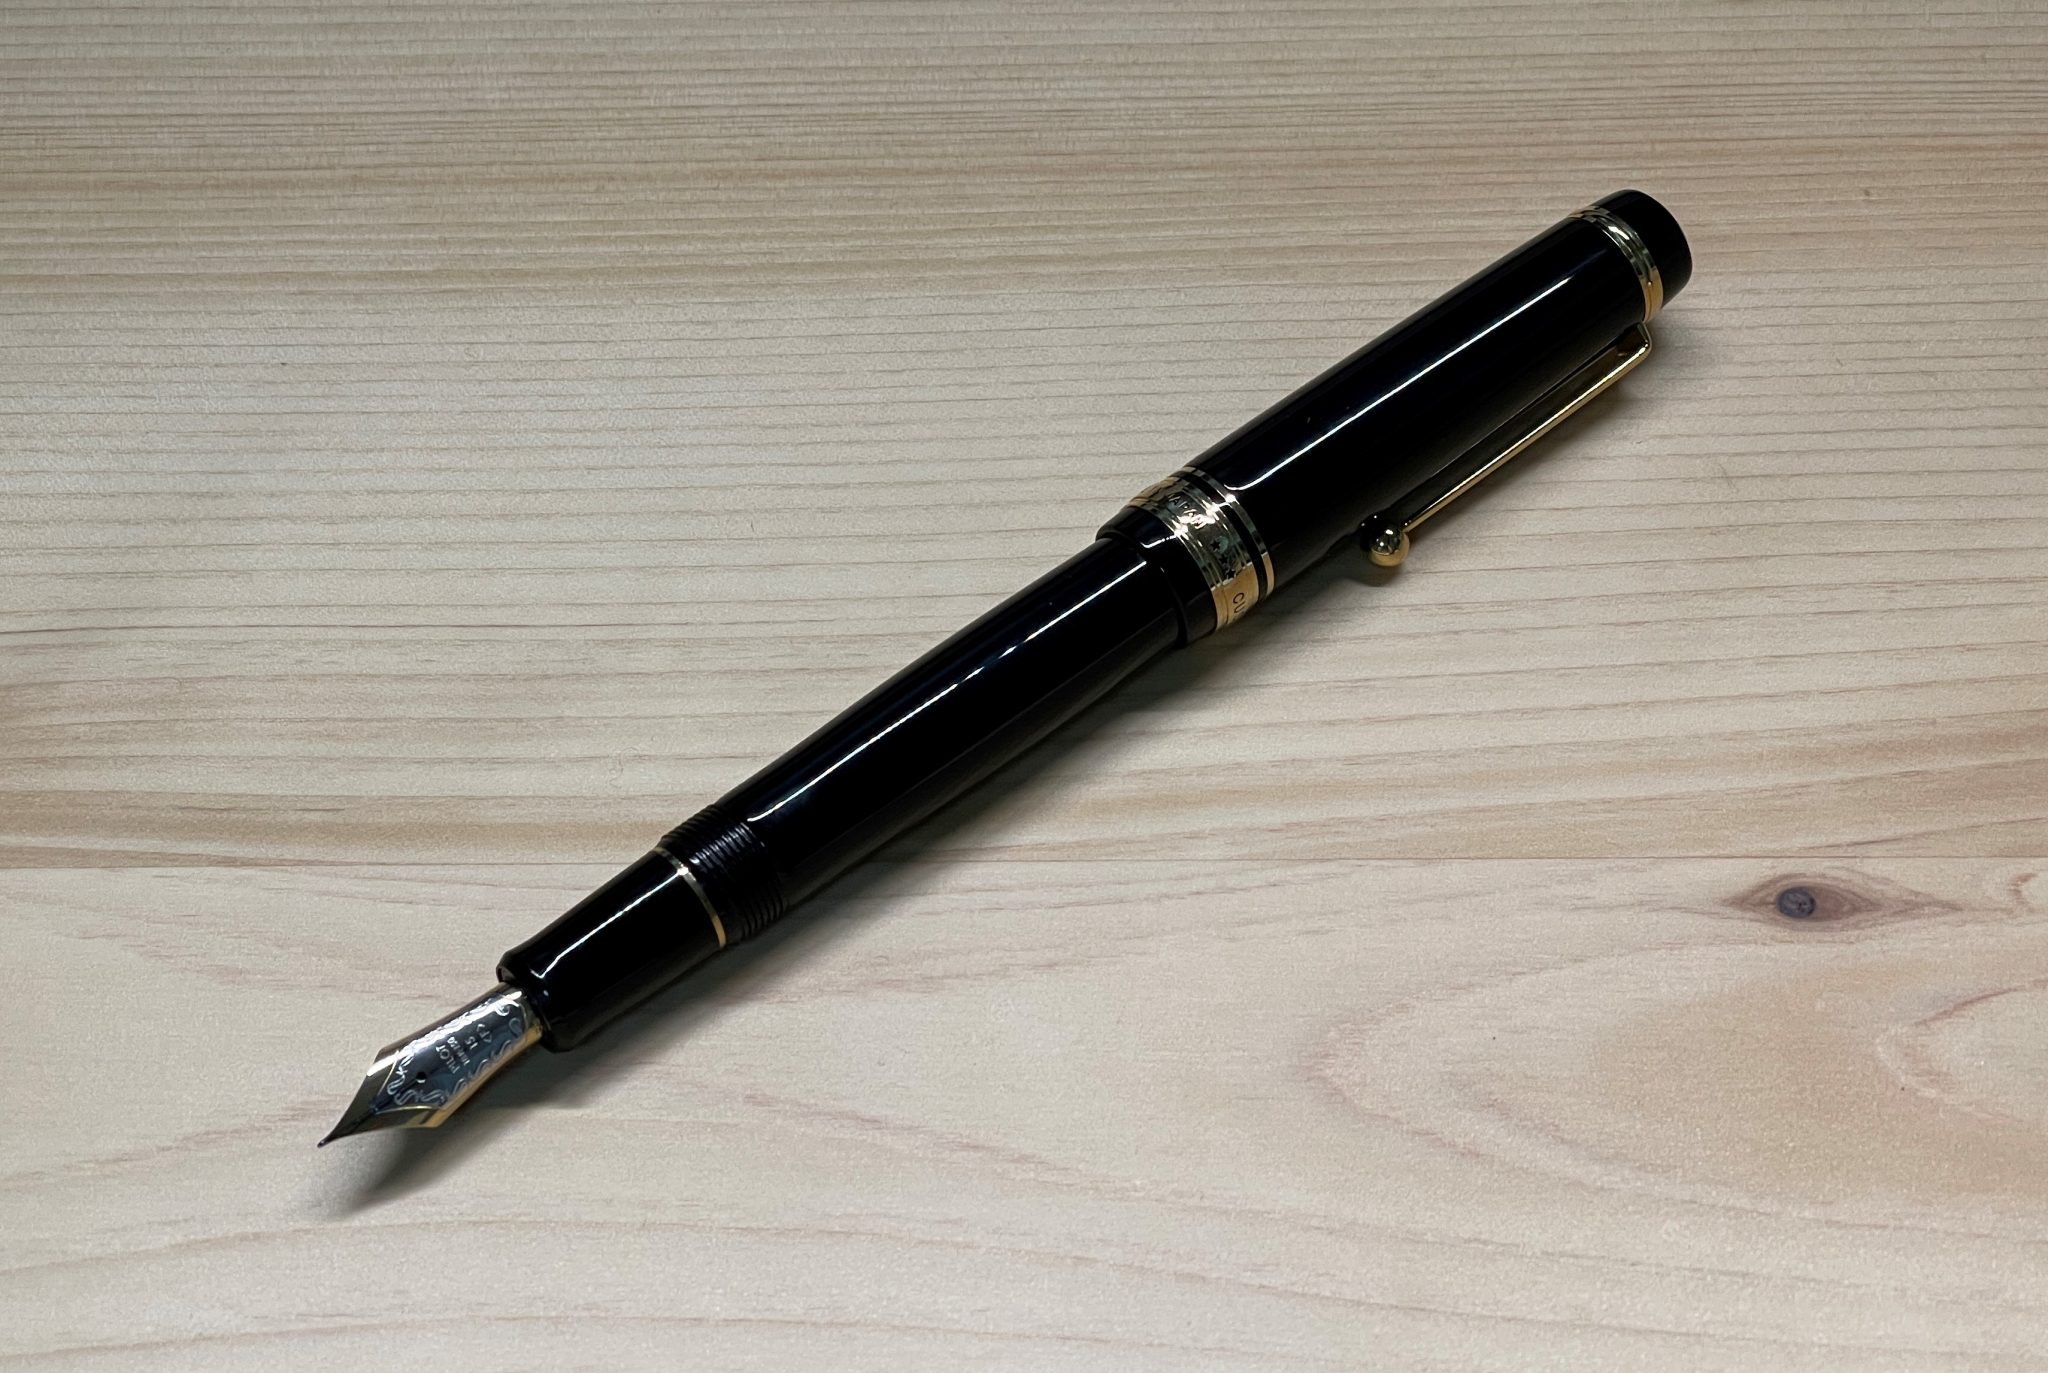 パイロットカスタム845は日本の伝統が詰まった万年筆だ【愛用レビュー】 – けいたろー通信